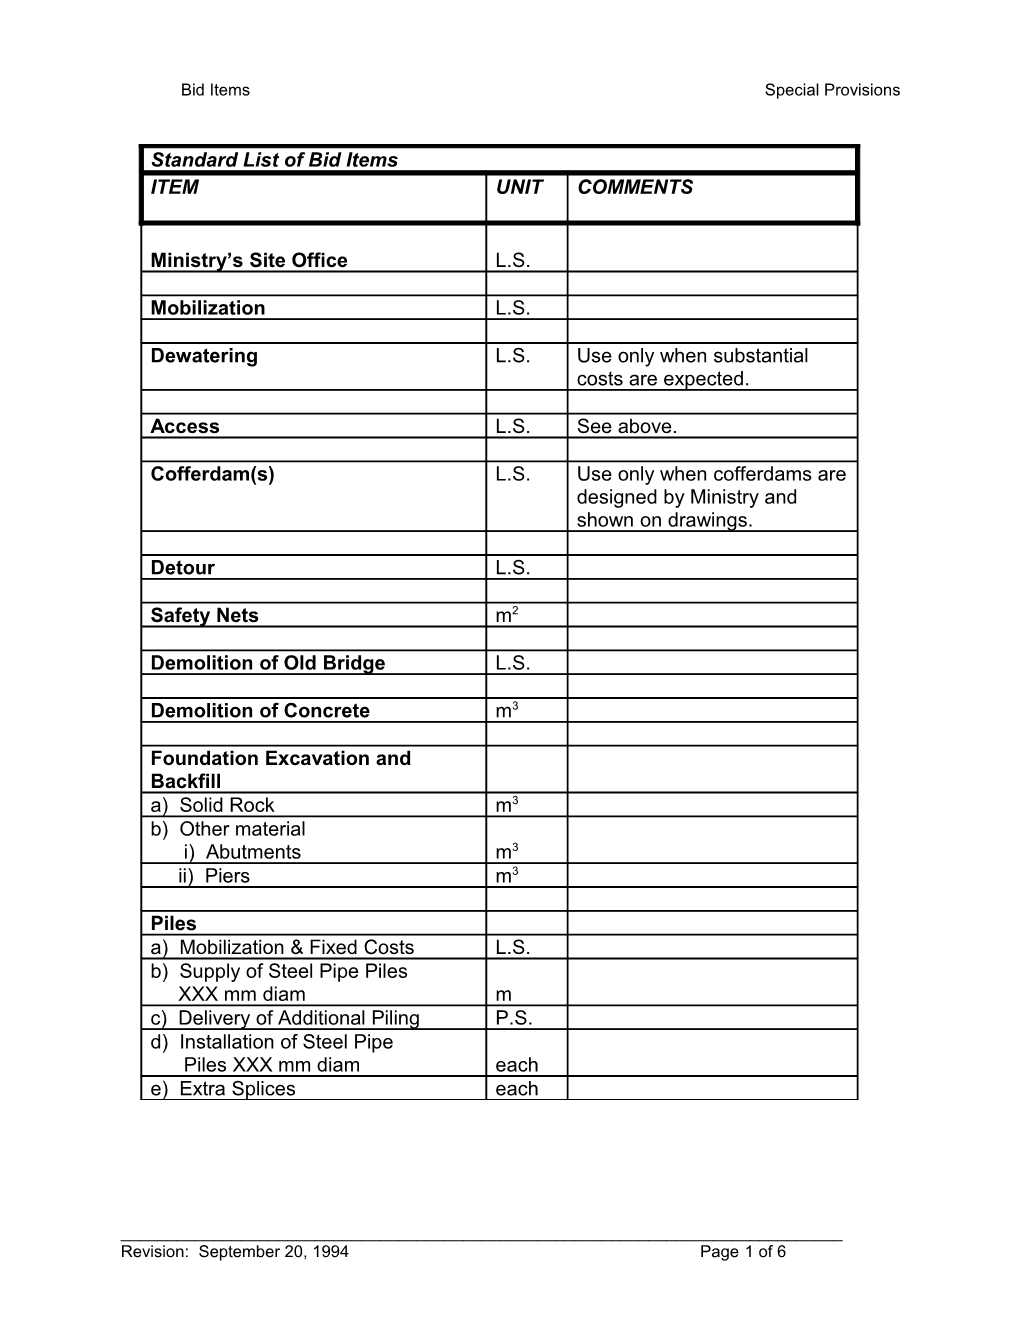 Standard List of Bid Items